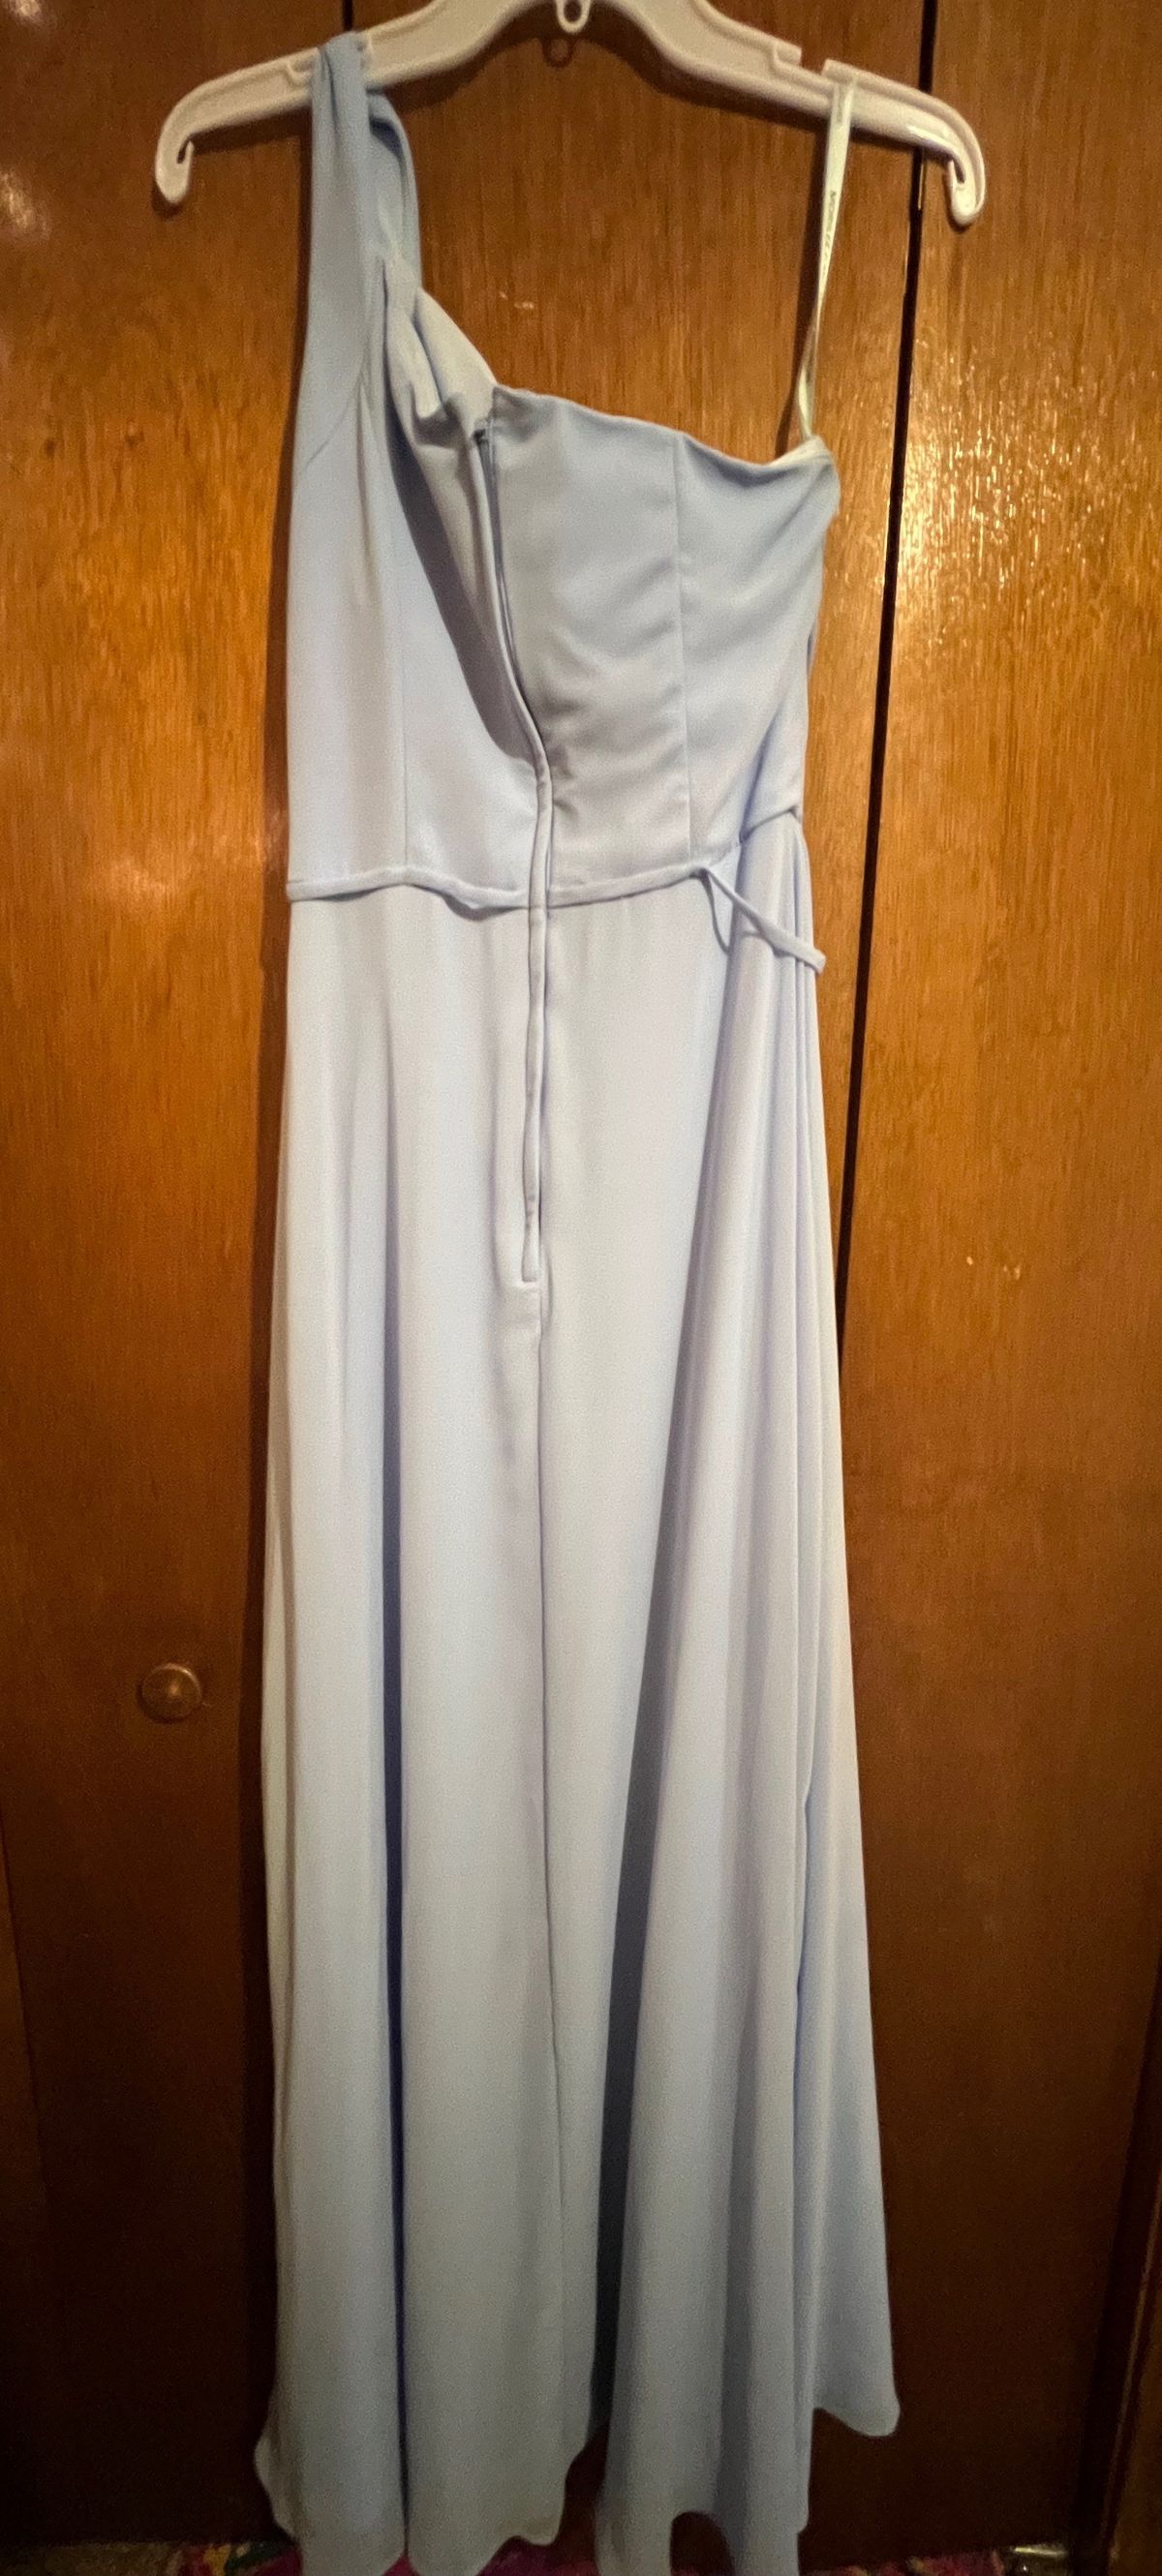 Size 12 Wedding Guest One Shoulder Blue Side Slit Dress on Queenly